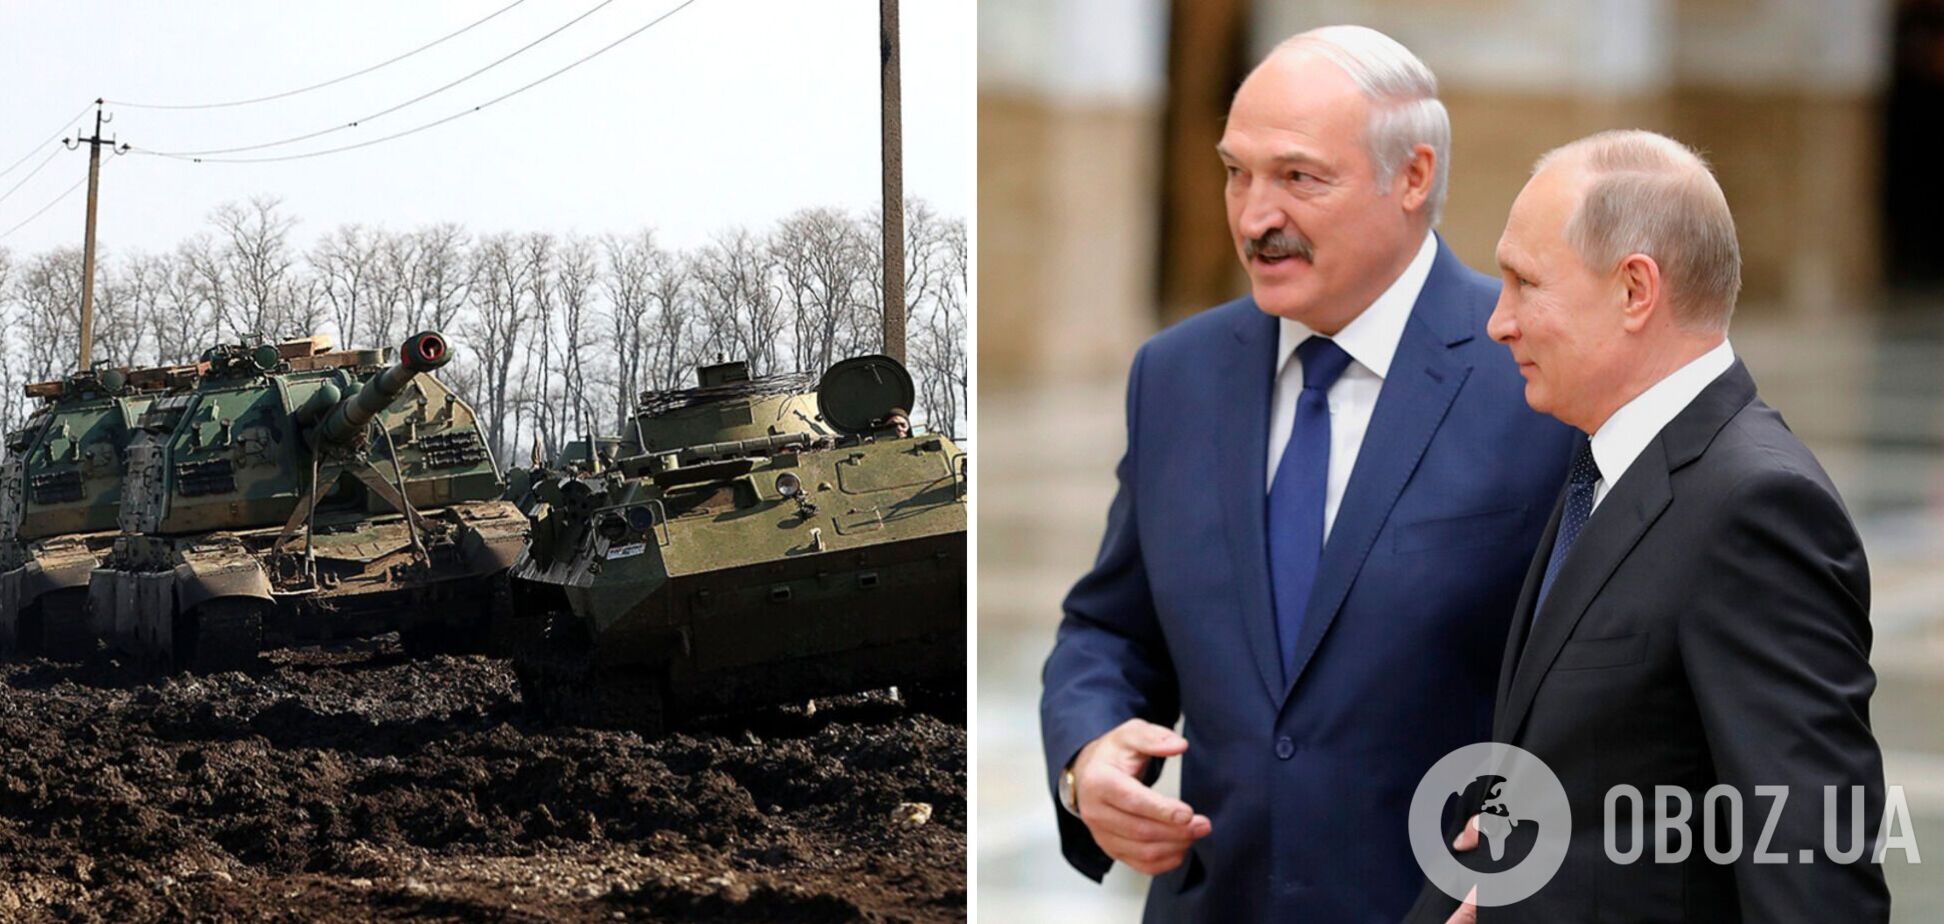 Лукашенко доигрался со спичками 'Гомельдрев', распалит войну, заодно еще сожжет и россию